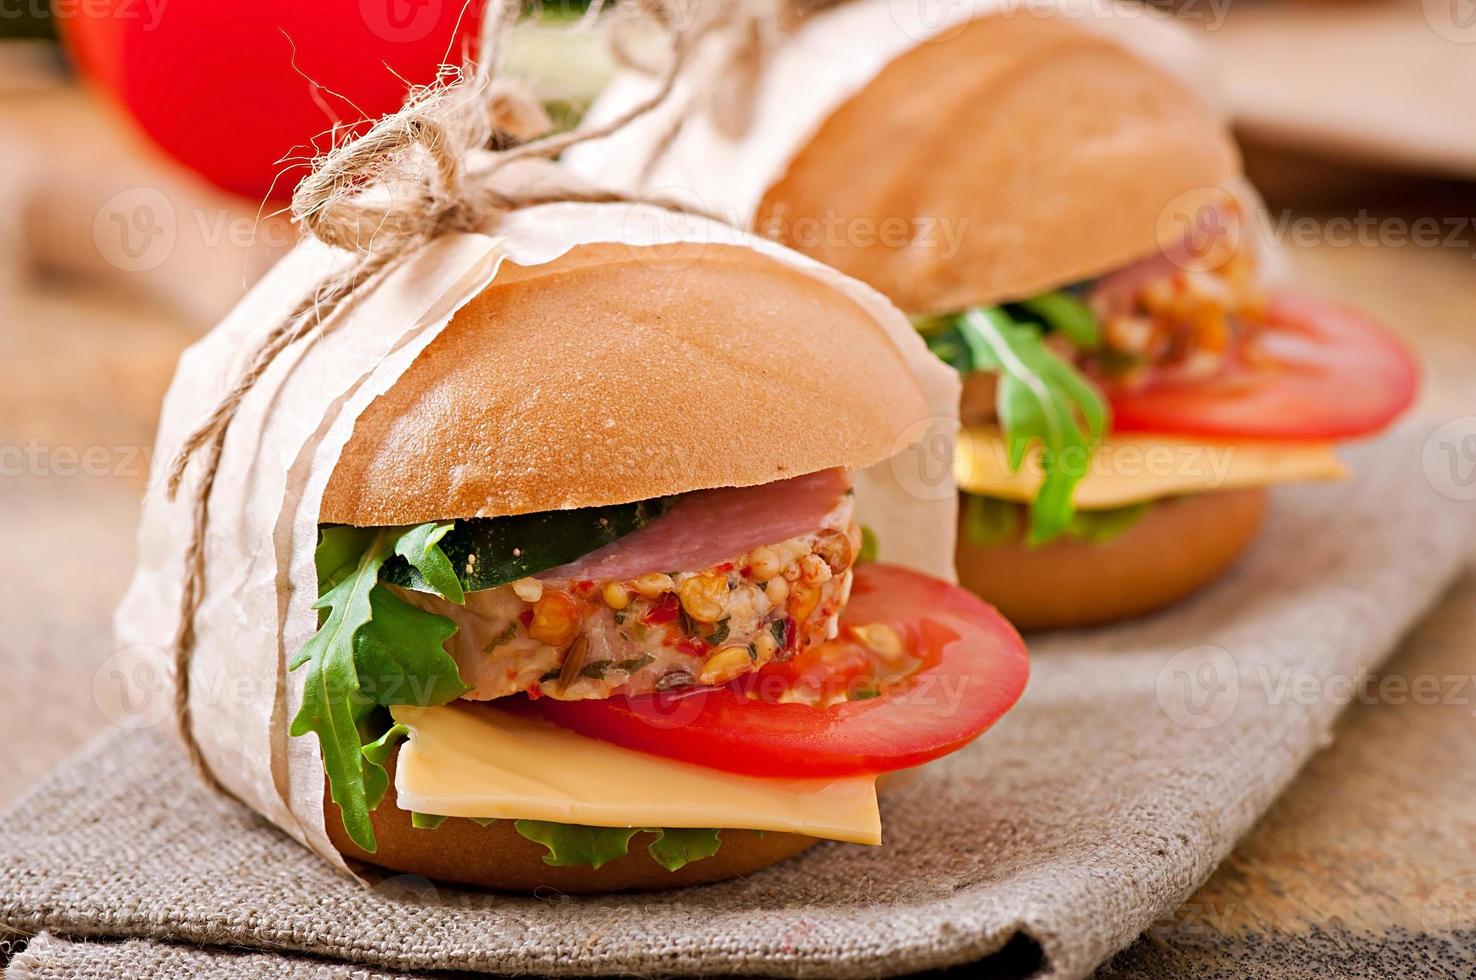 sandwich au jambon, fromage et légumes frais photo